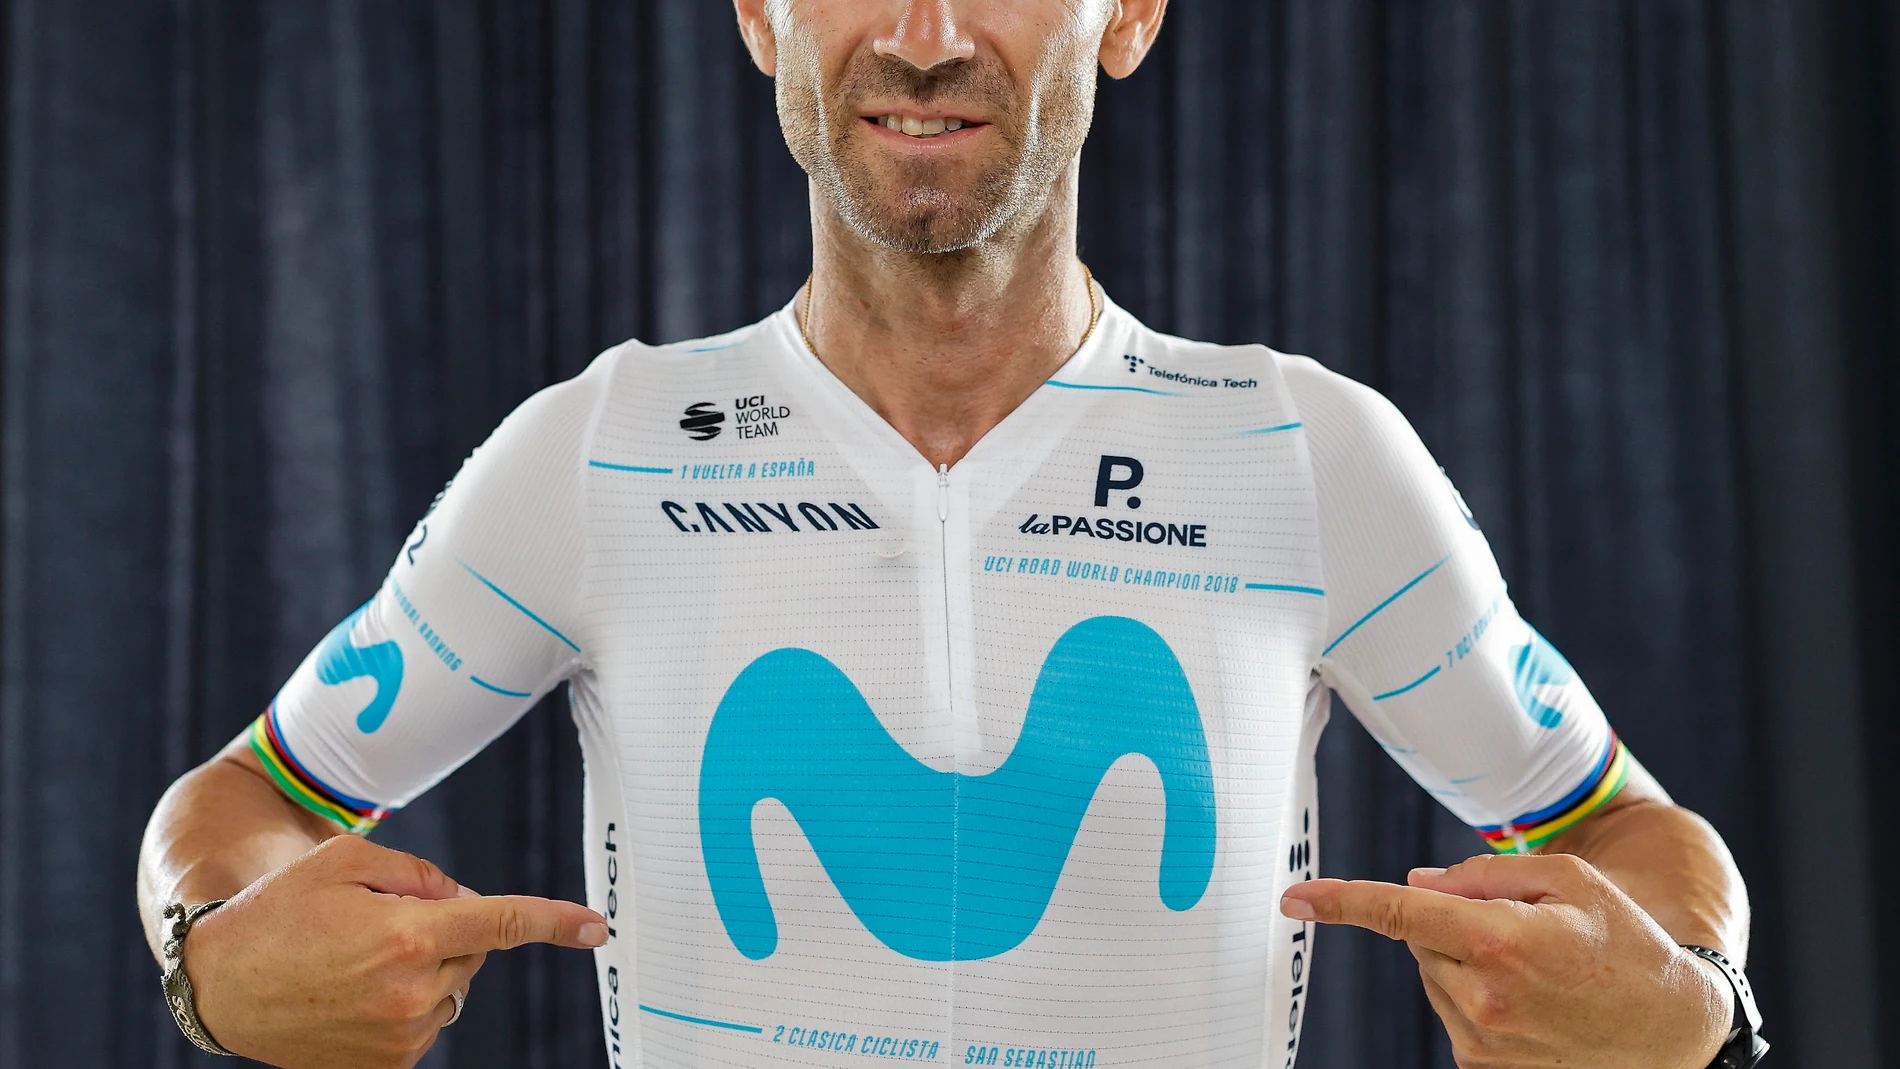 Maillot de homenaje de Movistar Team al ciclista Alejandro Valverde para La Vuelta 22